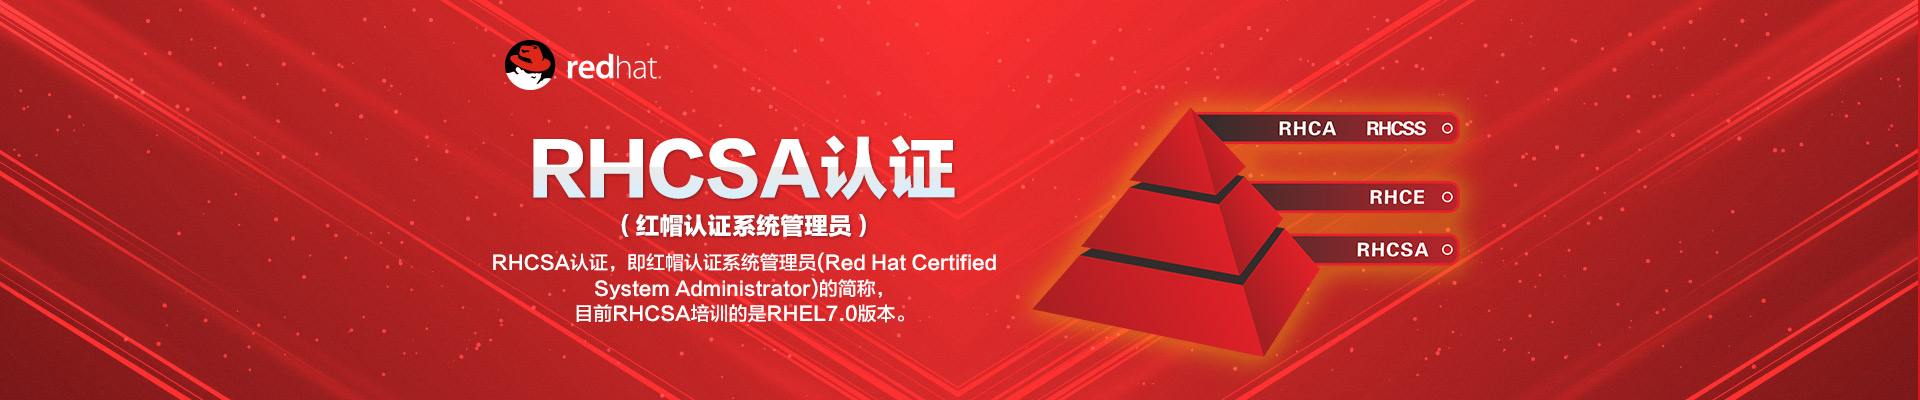 红帽认证RHCSA视频教程 Linux redhat 7.0 全套 【理论视频+实验视频+实验文档】插图